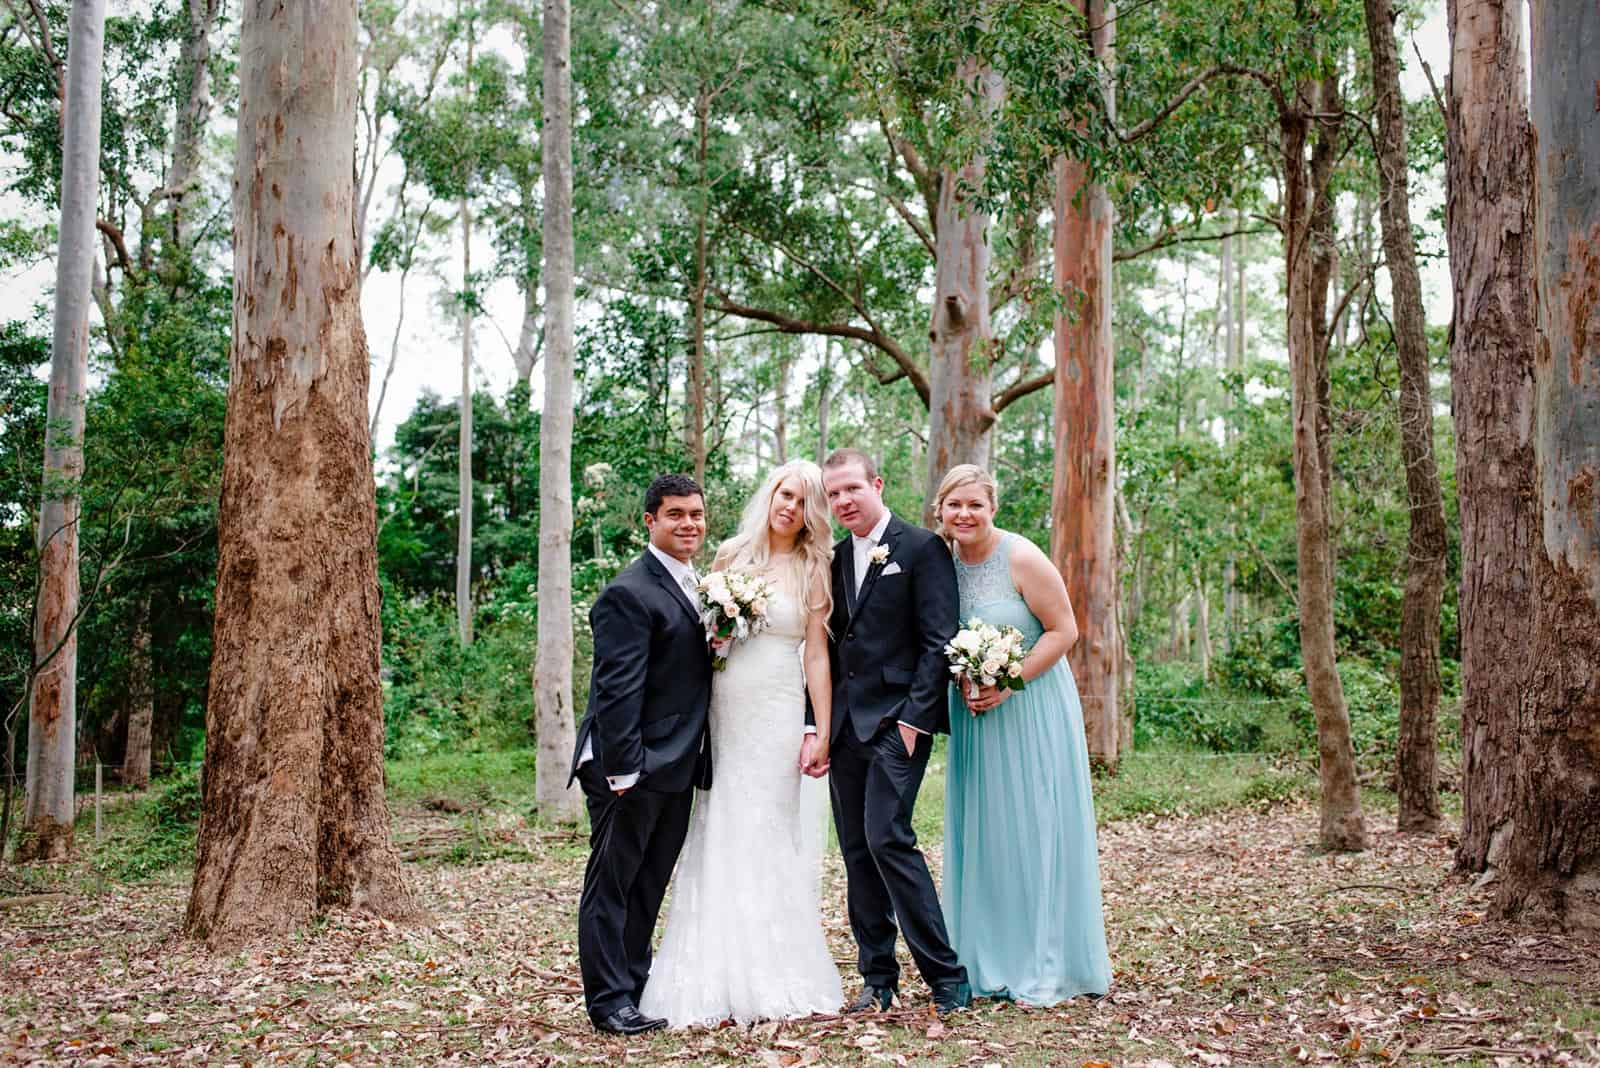 Aussie bush wedding photos